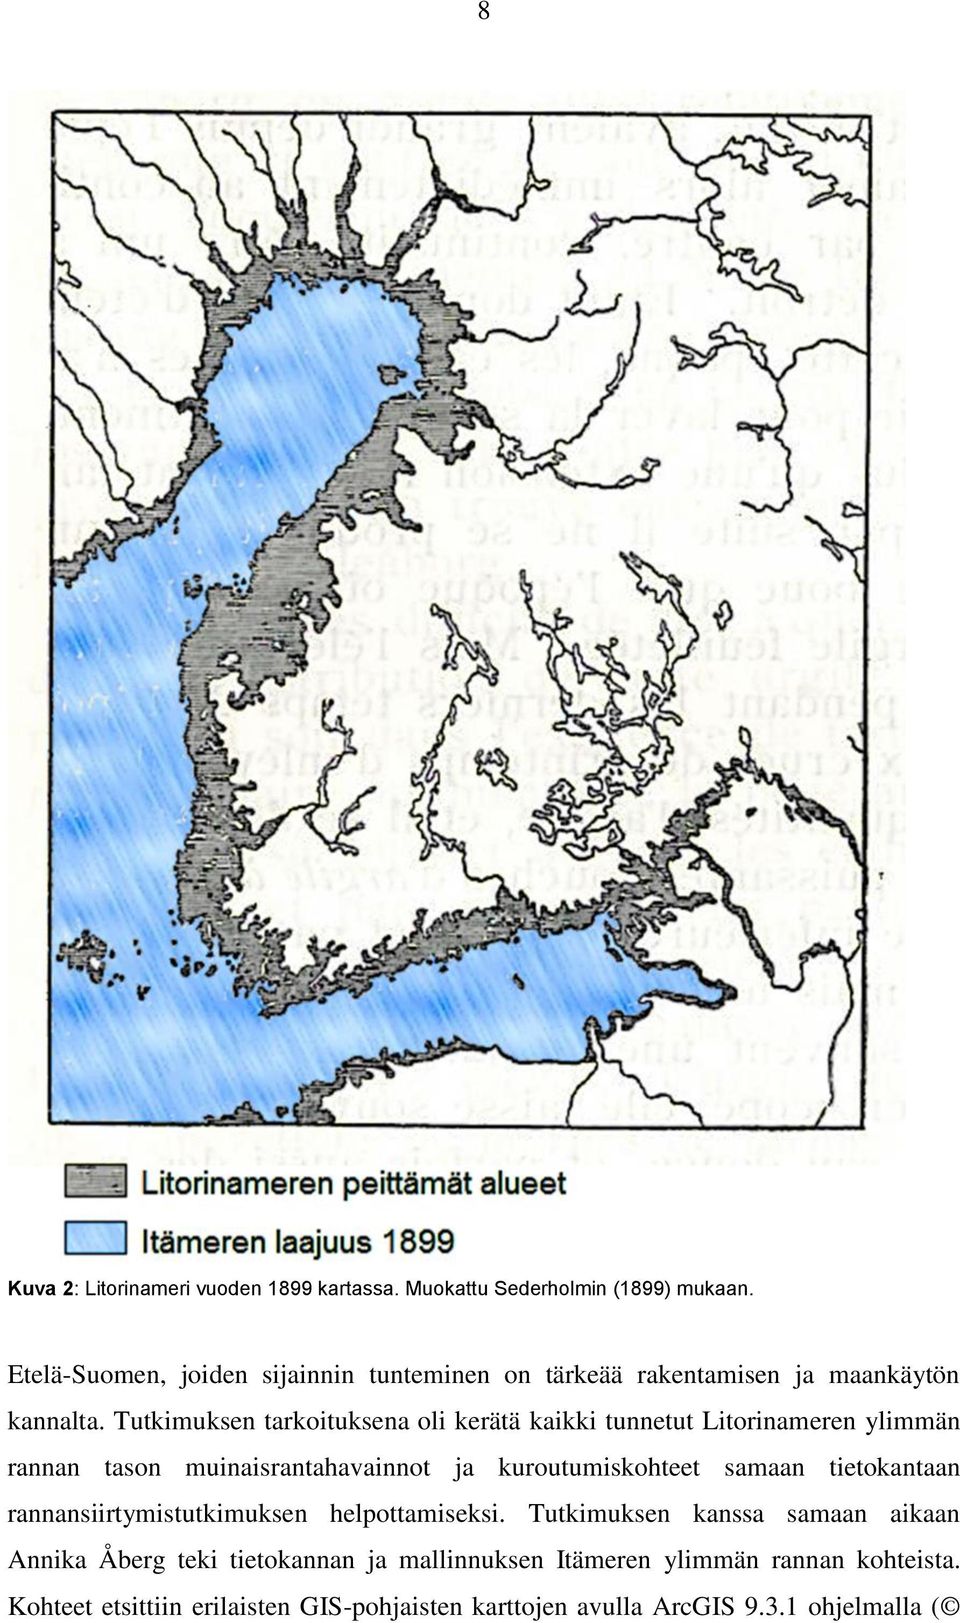 Tutkimuksen tarkoituksena oli kerätä kaikki tunnetut Litorinameren ylimmän rannan tason muinaisrantahavainnot ja kuroutumiskohteet samaan